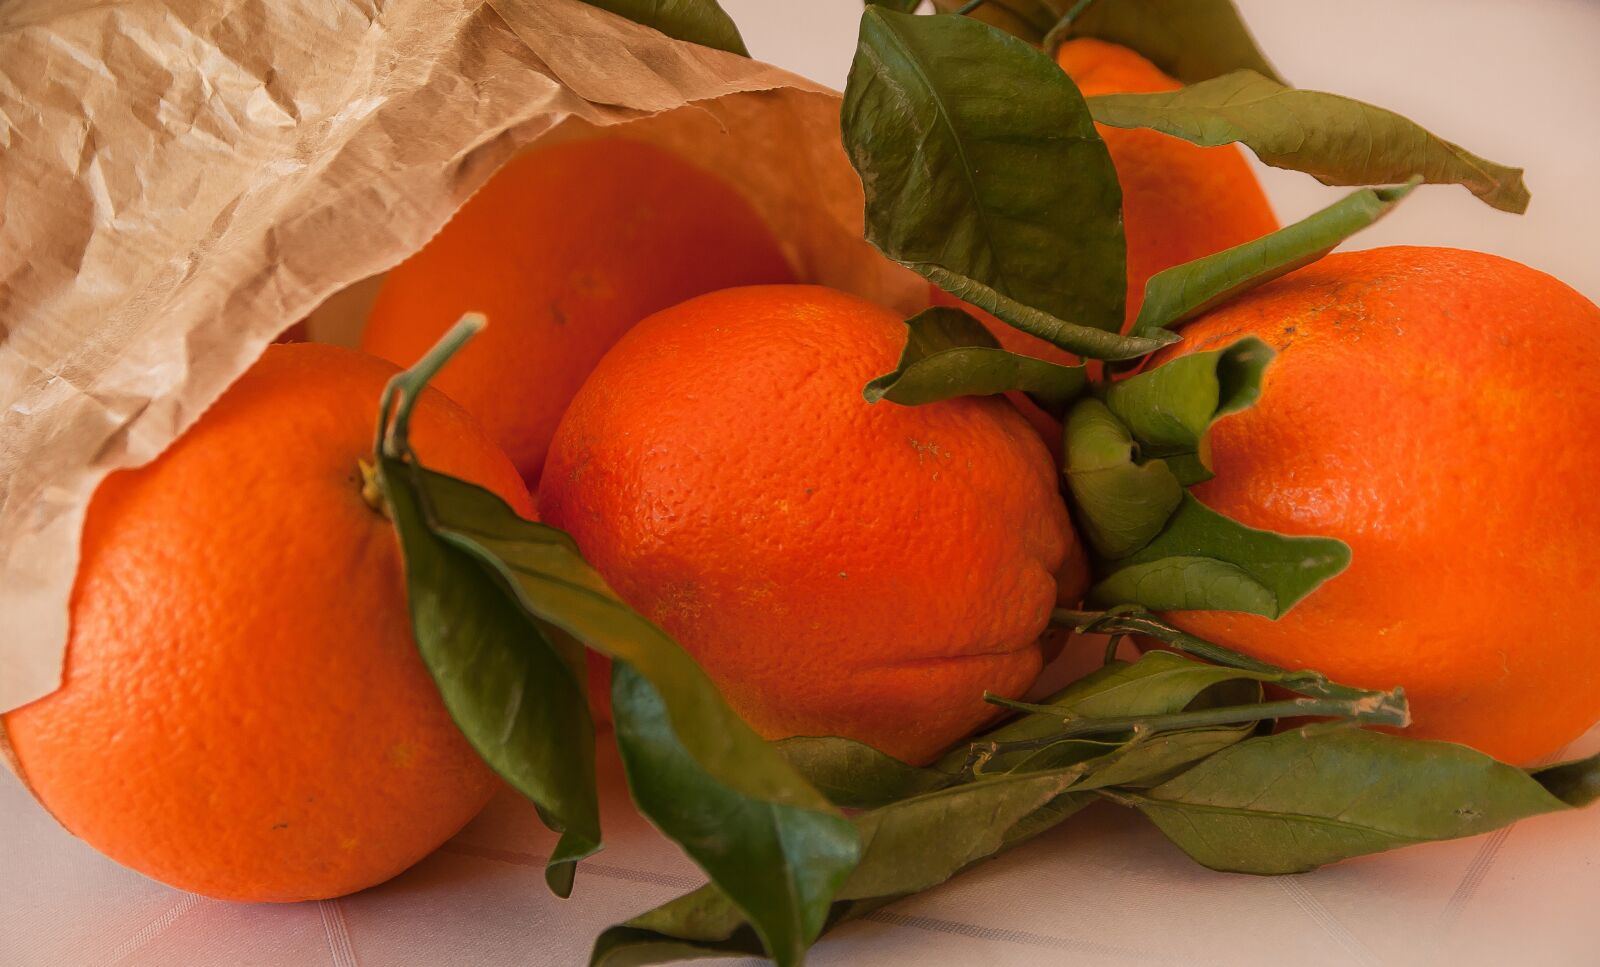 Pentax K10D sample photo. Fruit, oranges, citrus photography